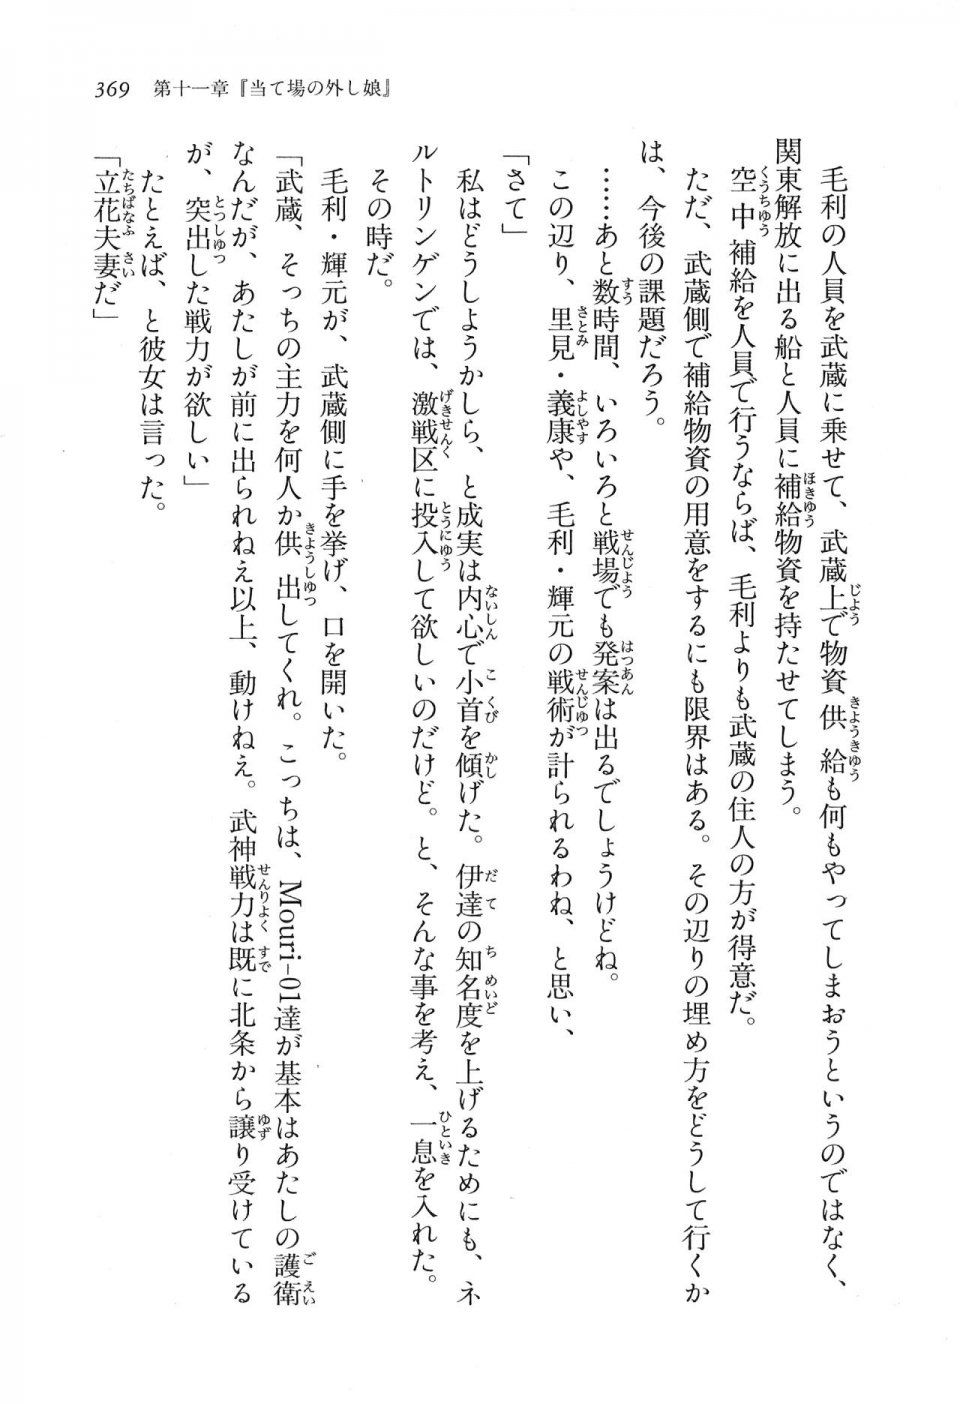 Kyoukai Senjou no Horizon LN Vol 16(7A) - Photo #369